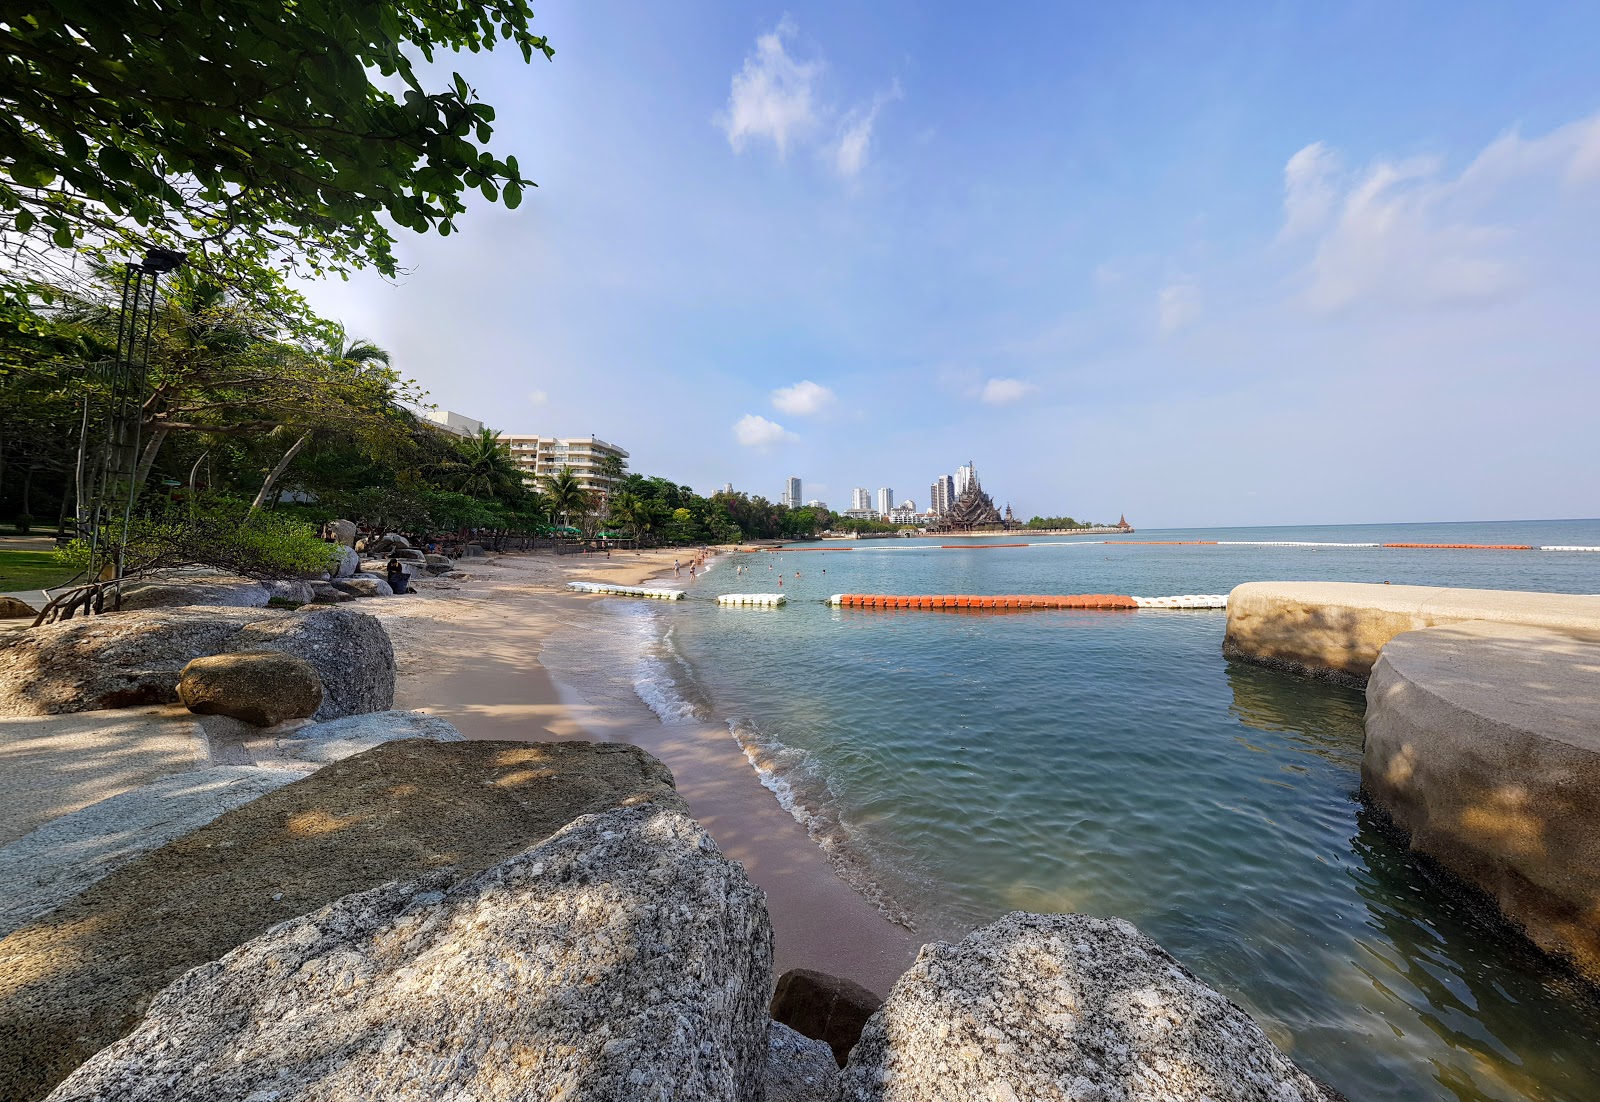 Photo de Wong Prachan Beach - endroit populaire parmi les connaisseurs de la détente